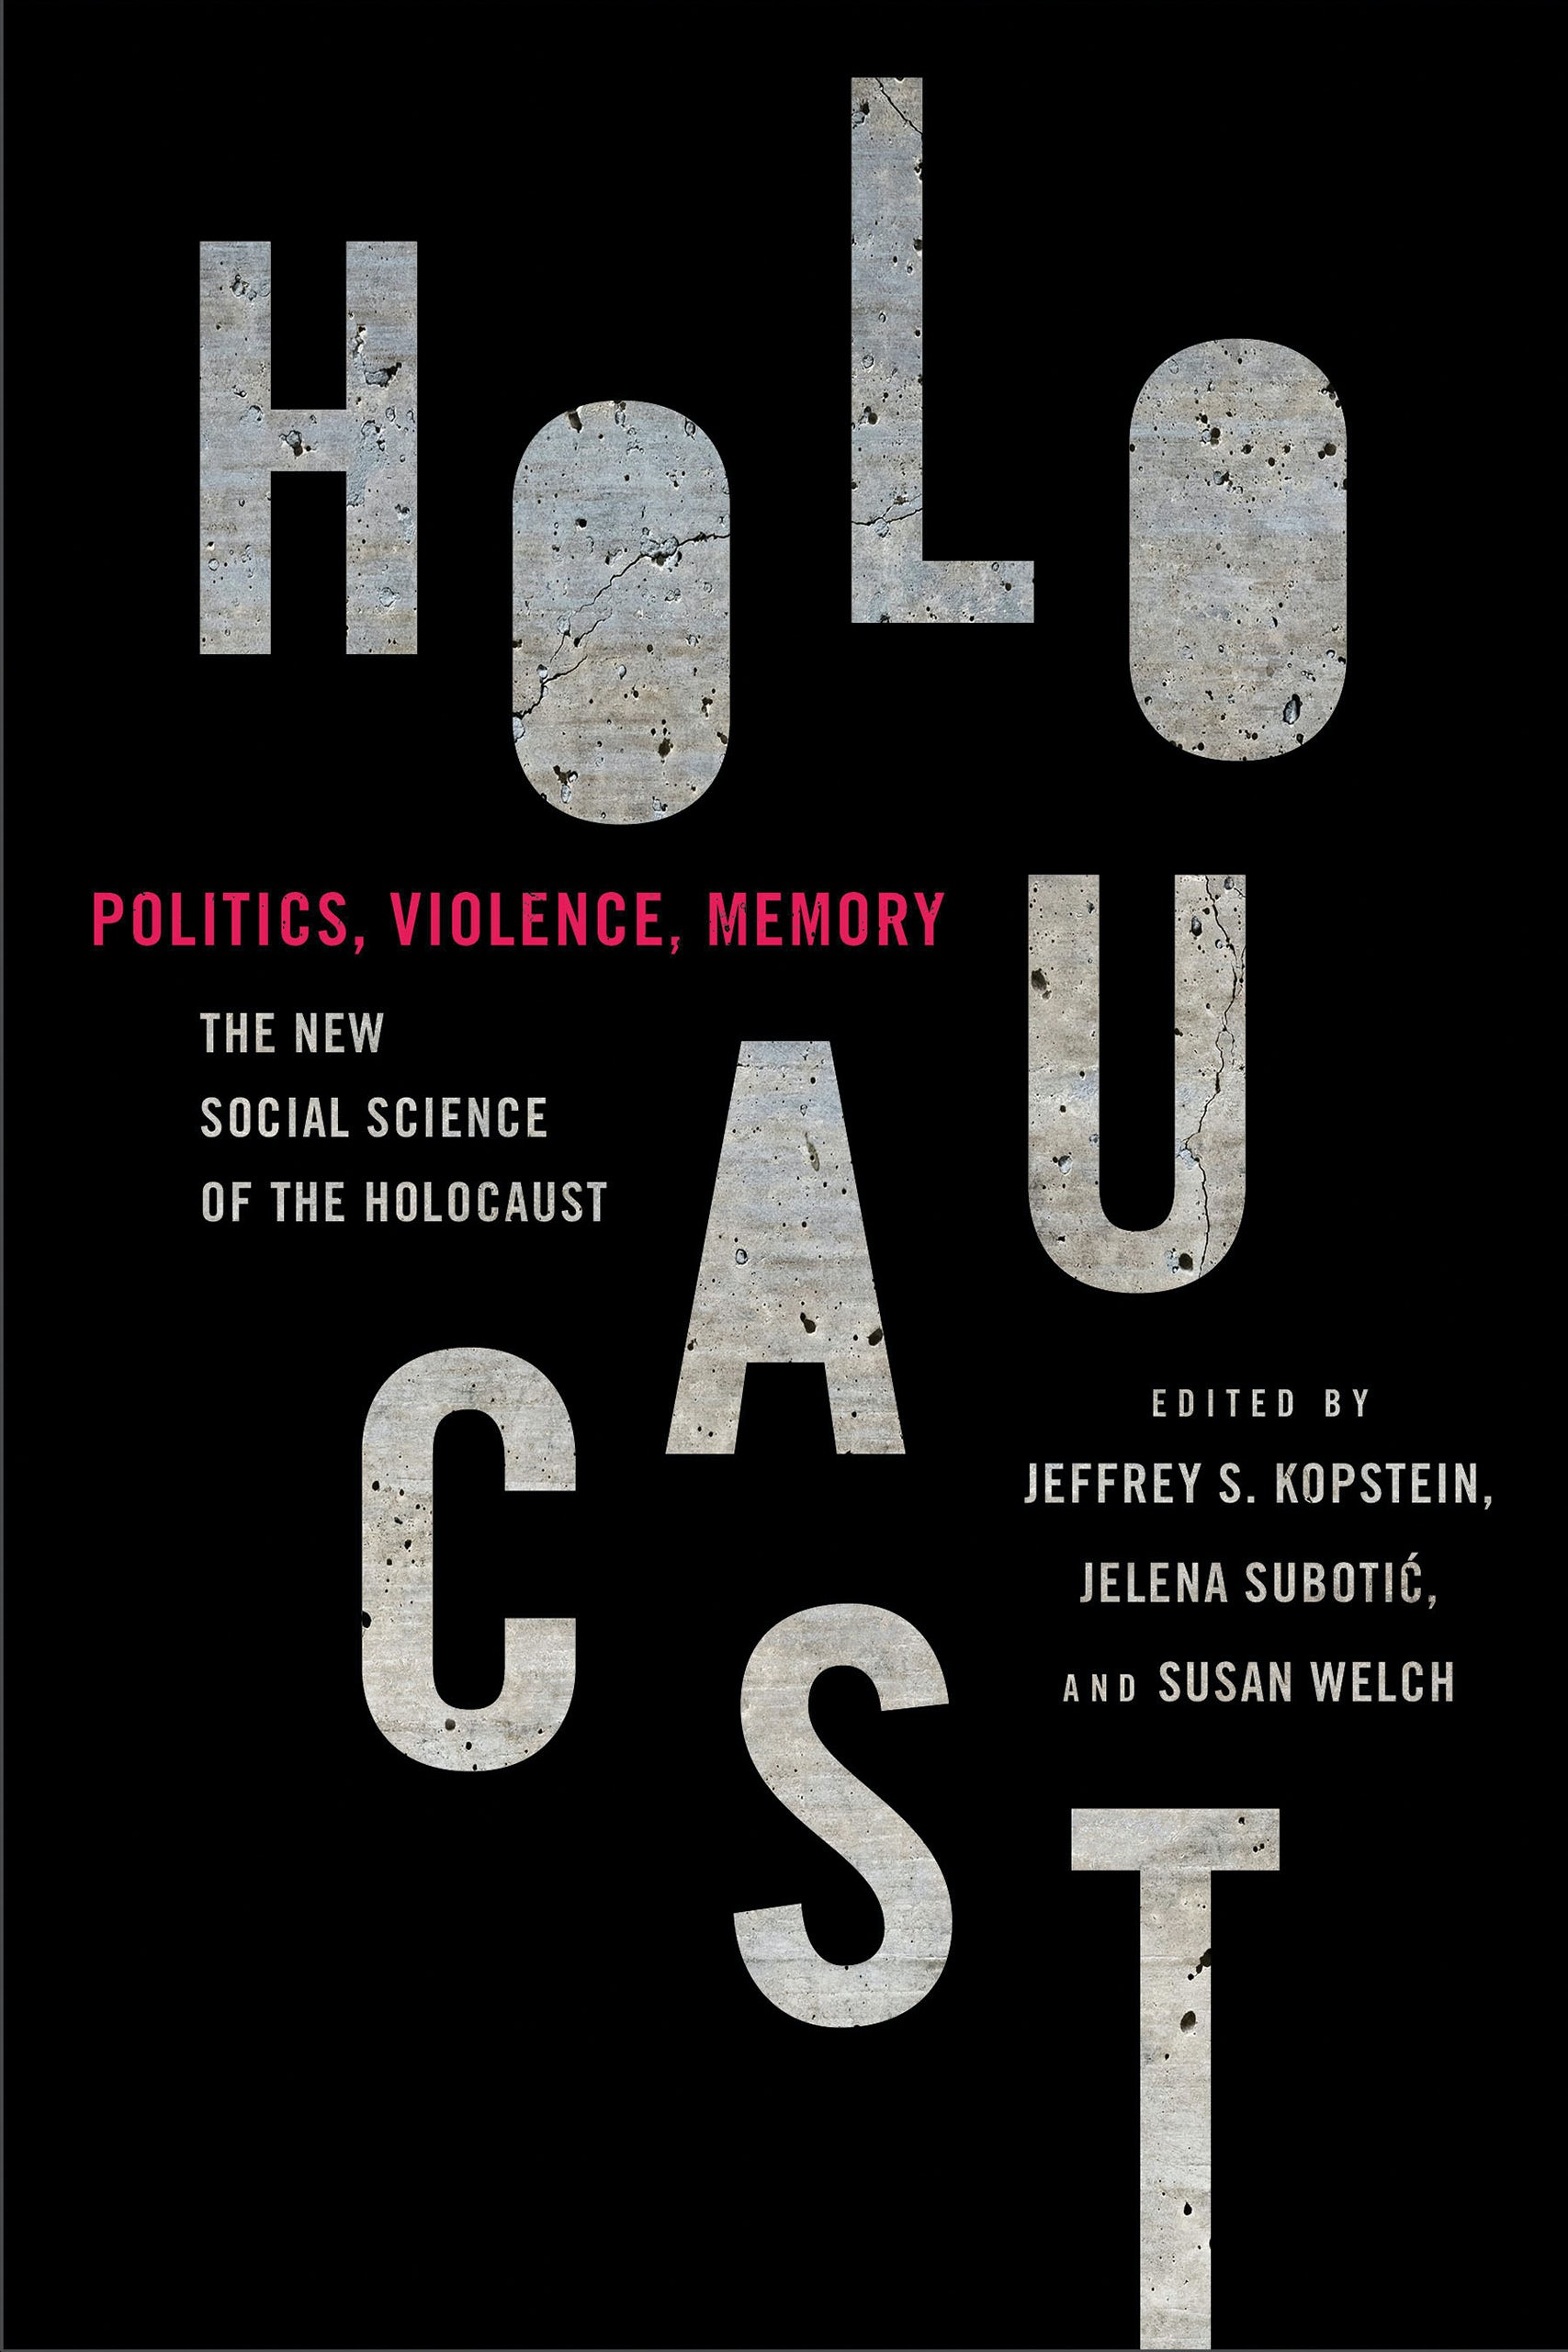 Book cover of Politics, Violence, Memory of Holocaust